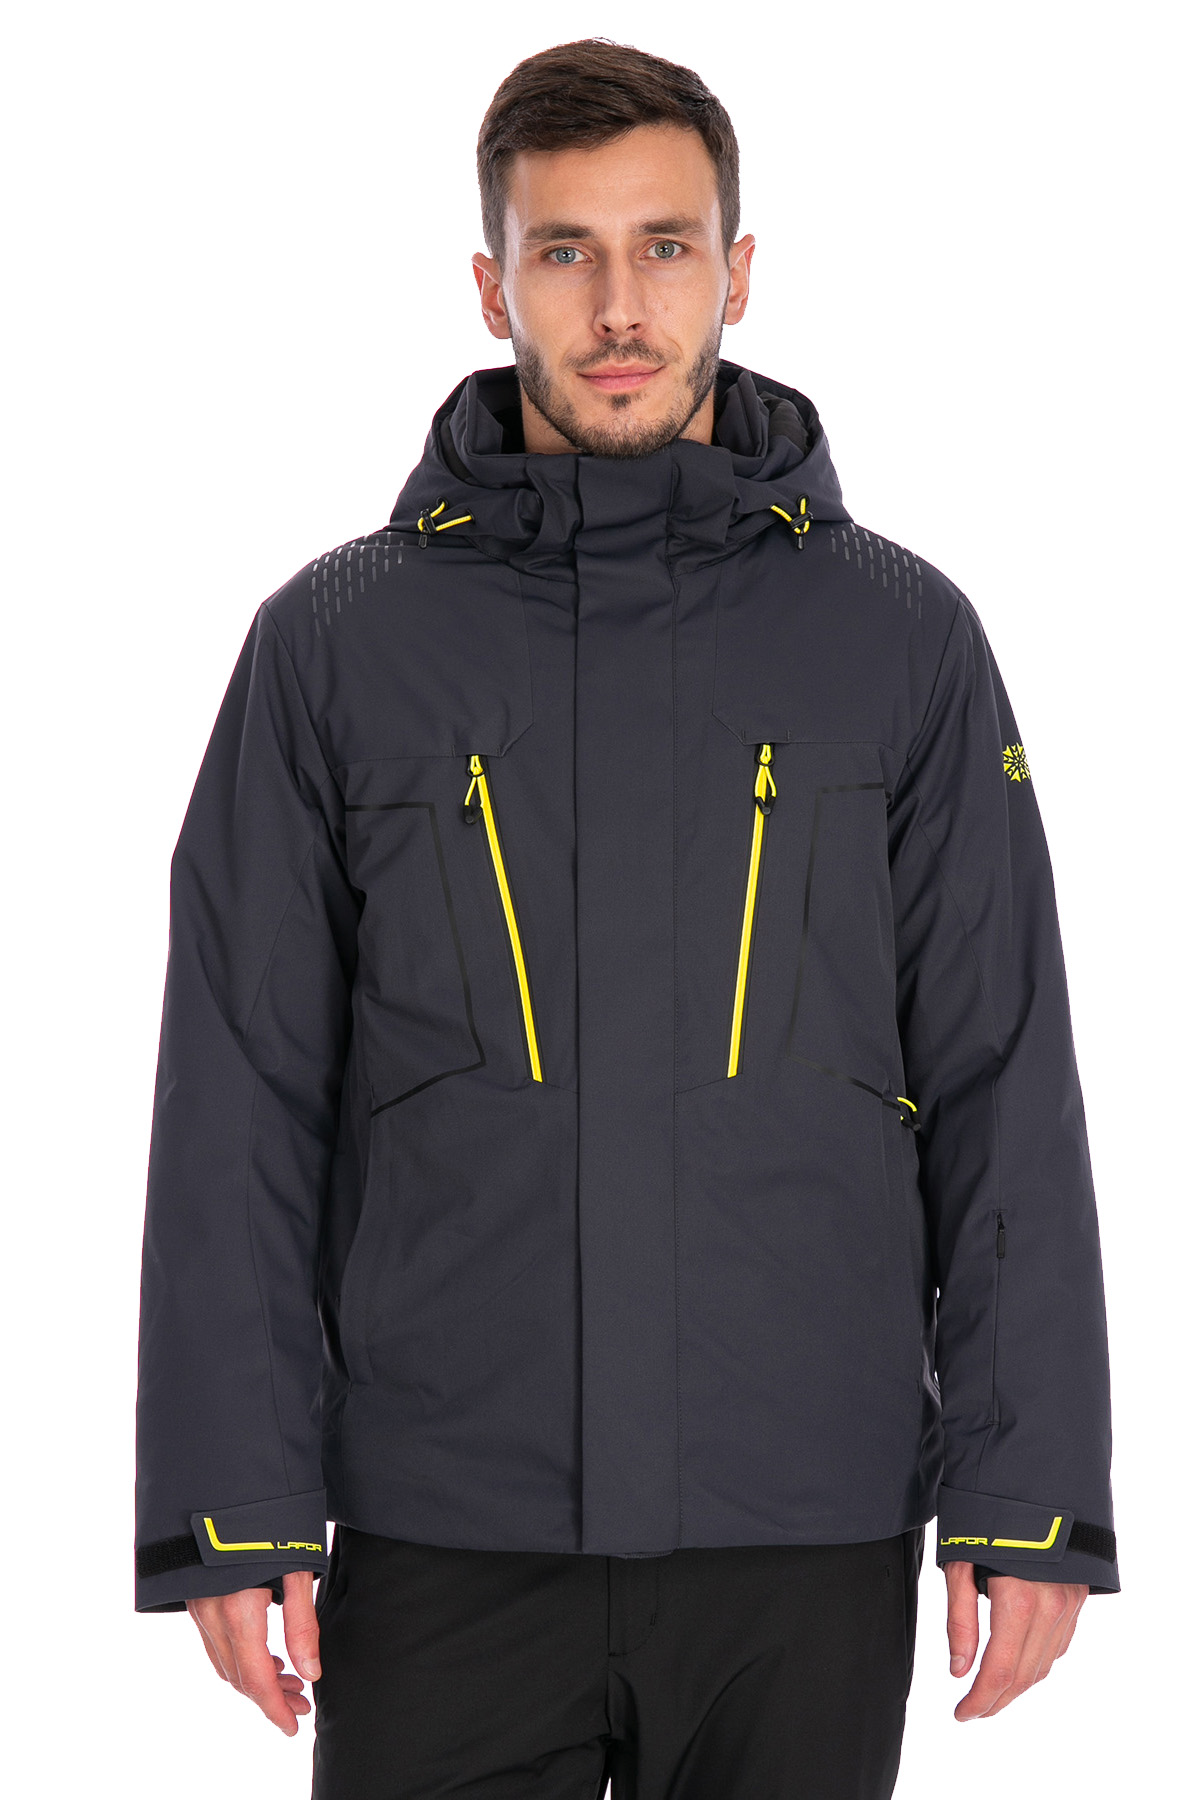 Мужская горнолыжная Куртка Lafor Темно-серый, 767013 (48, m)